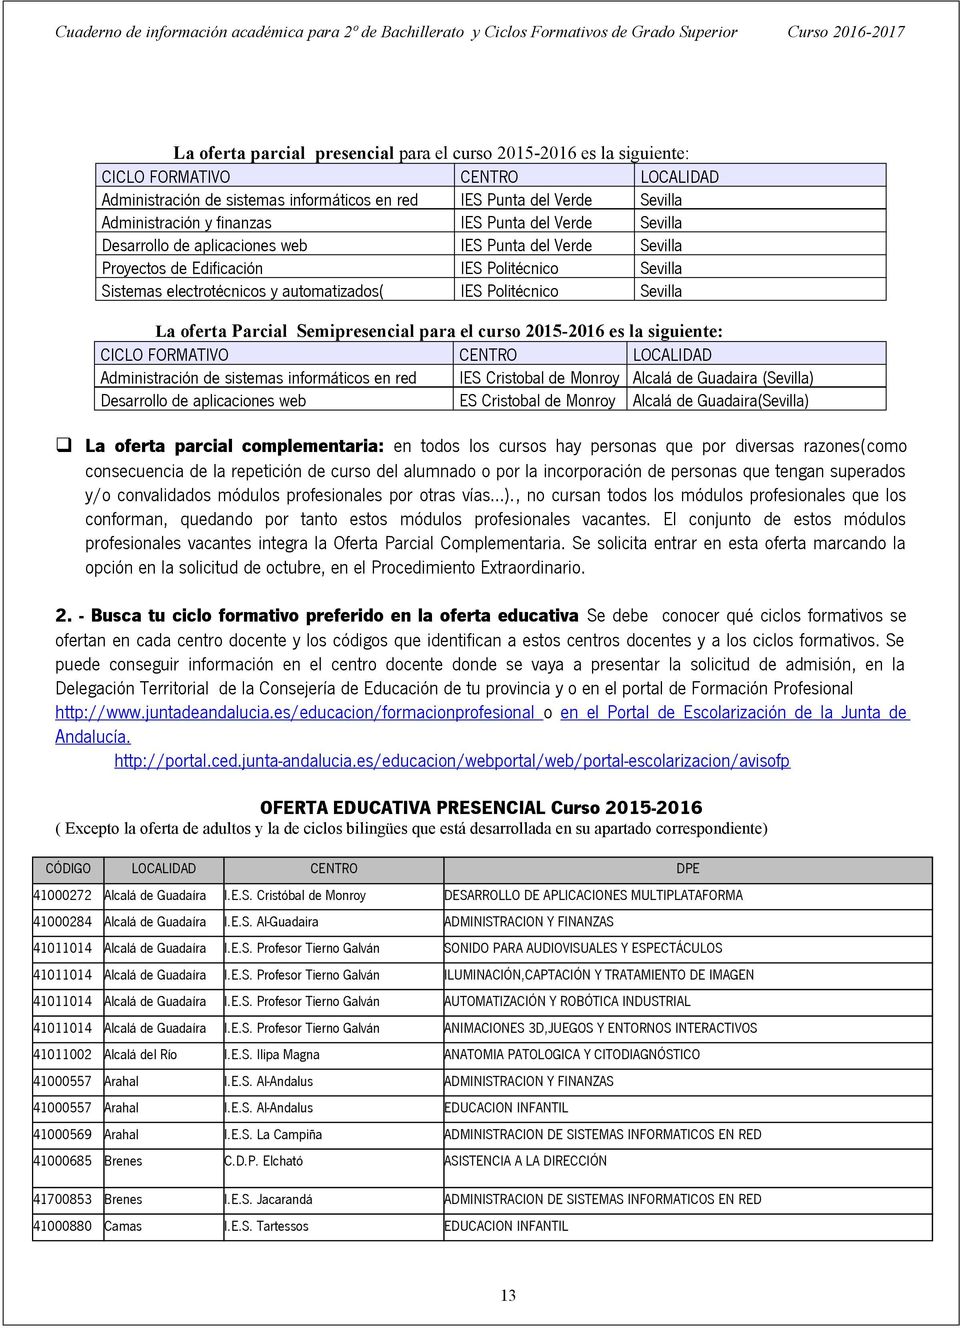 Politécnico Sevilla La oferta Parcial Semipresencial para el curso 2015-2016 es la siguiente: CICLO FORMATIVO CENTRO LOCALIDAD Administración de sistemas informáticos en red IES Cristobal de Monroy